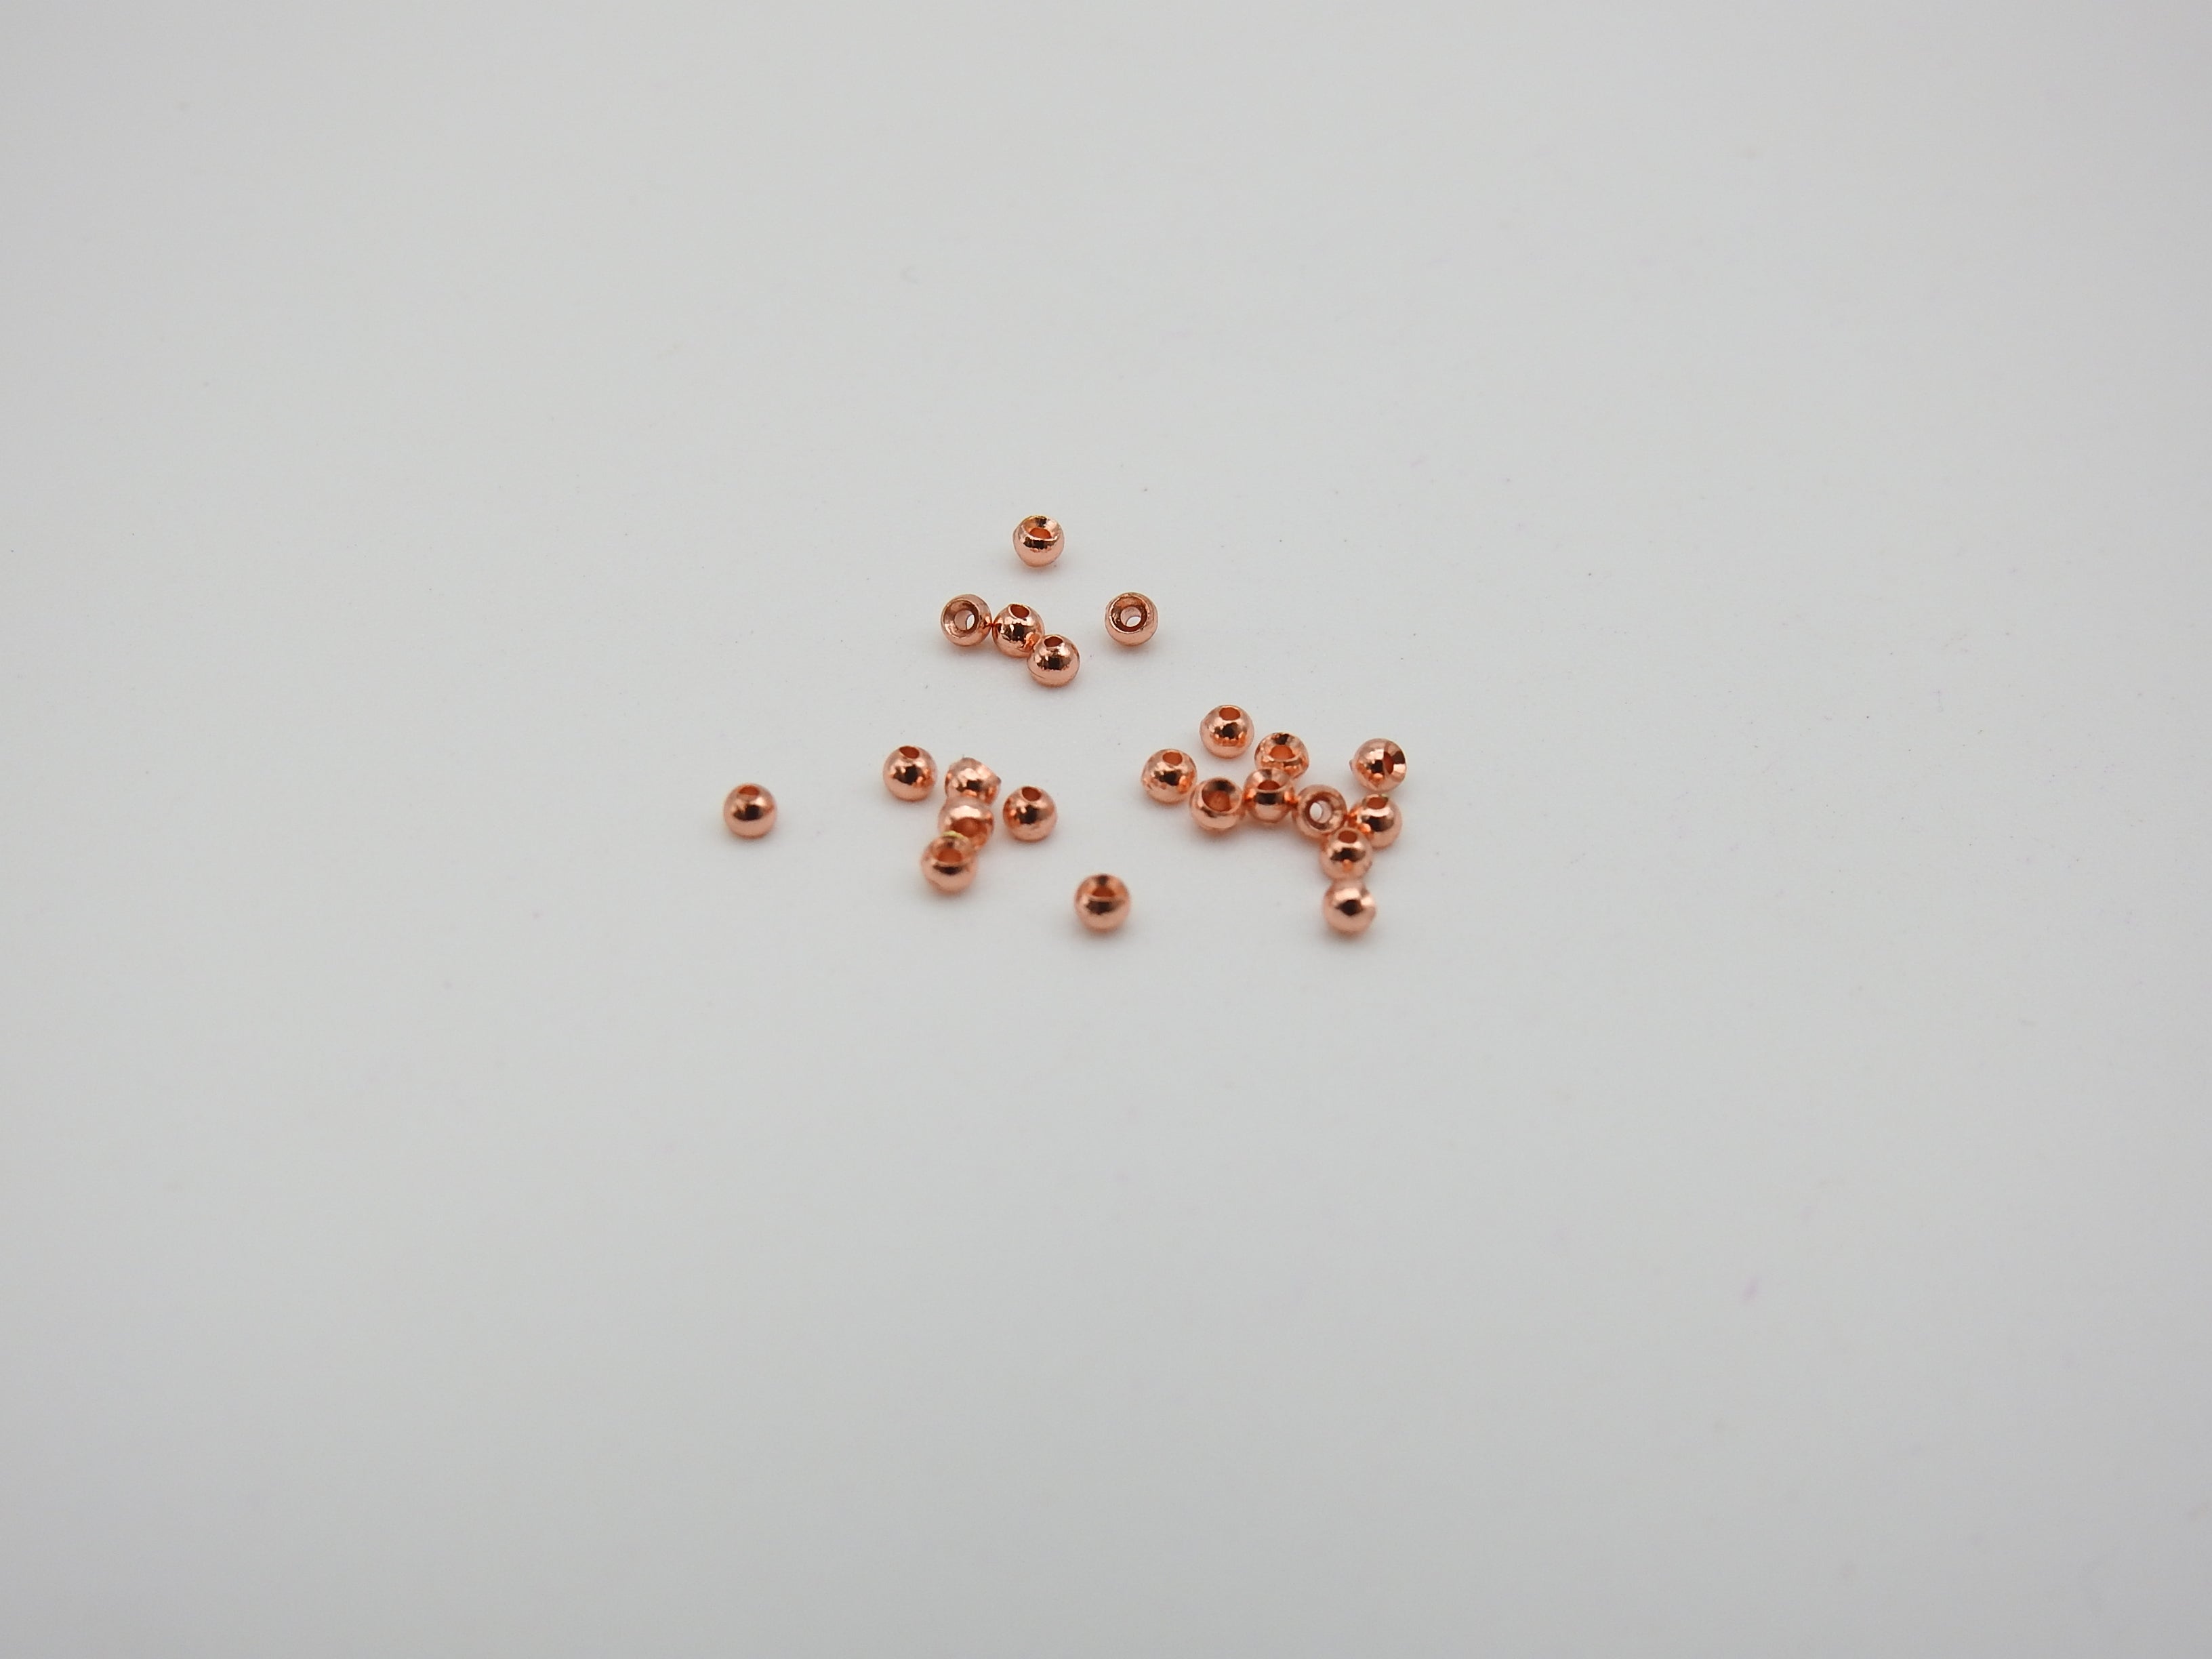 Wapsi Tungsten Bomb Beads 100 Pack